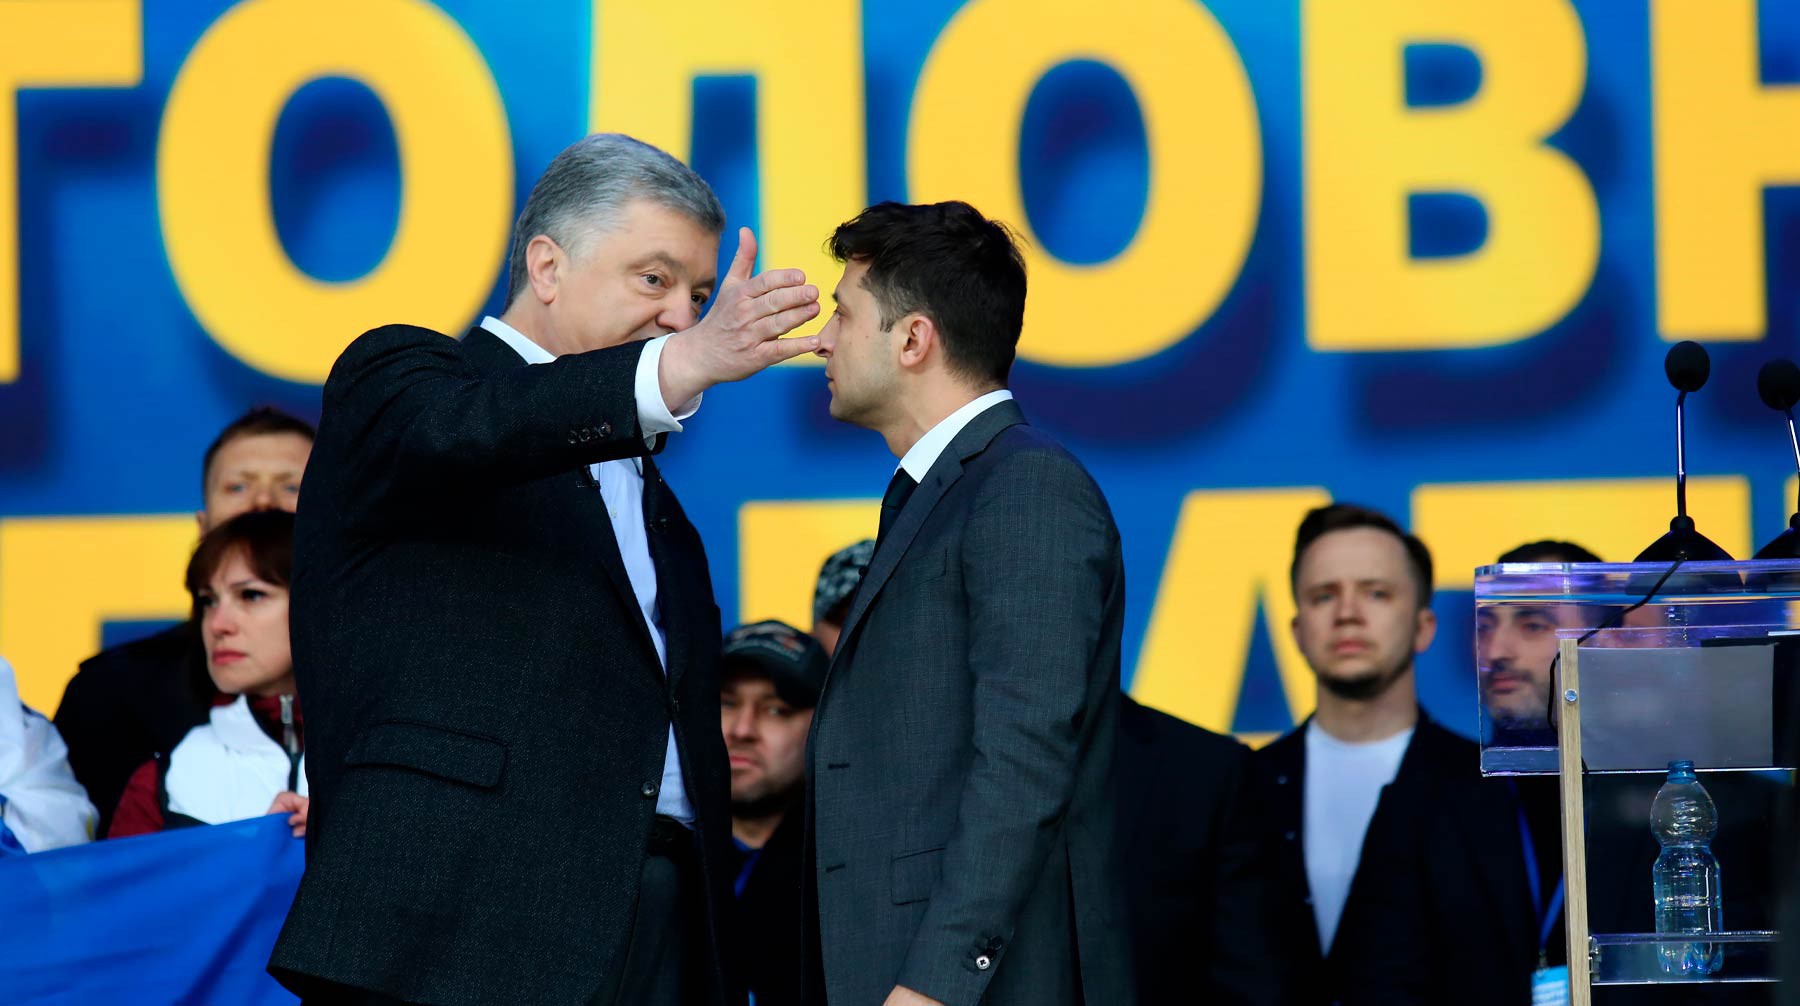 Dailystorm - «Оставьте суд в покое»: Порошенко предостерег Зеленского от судьбы Януковича